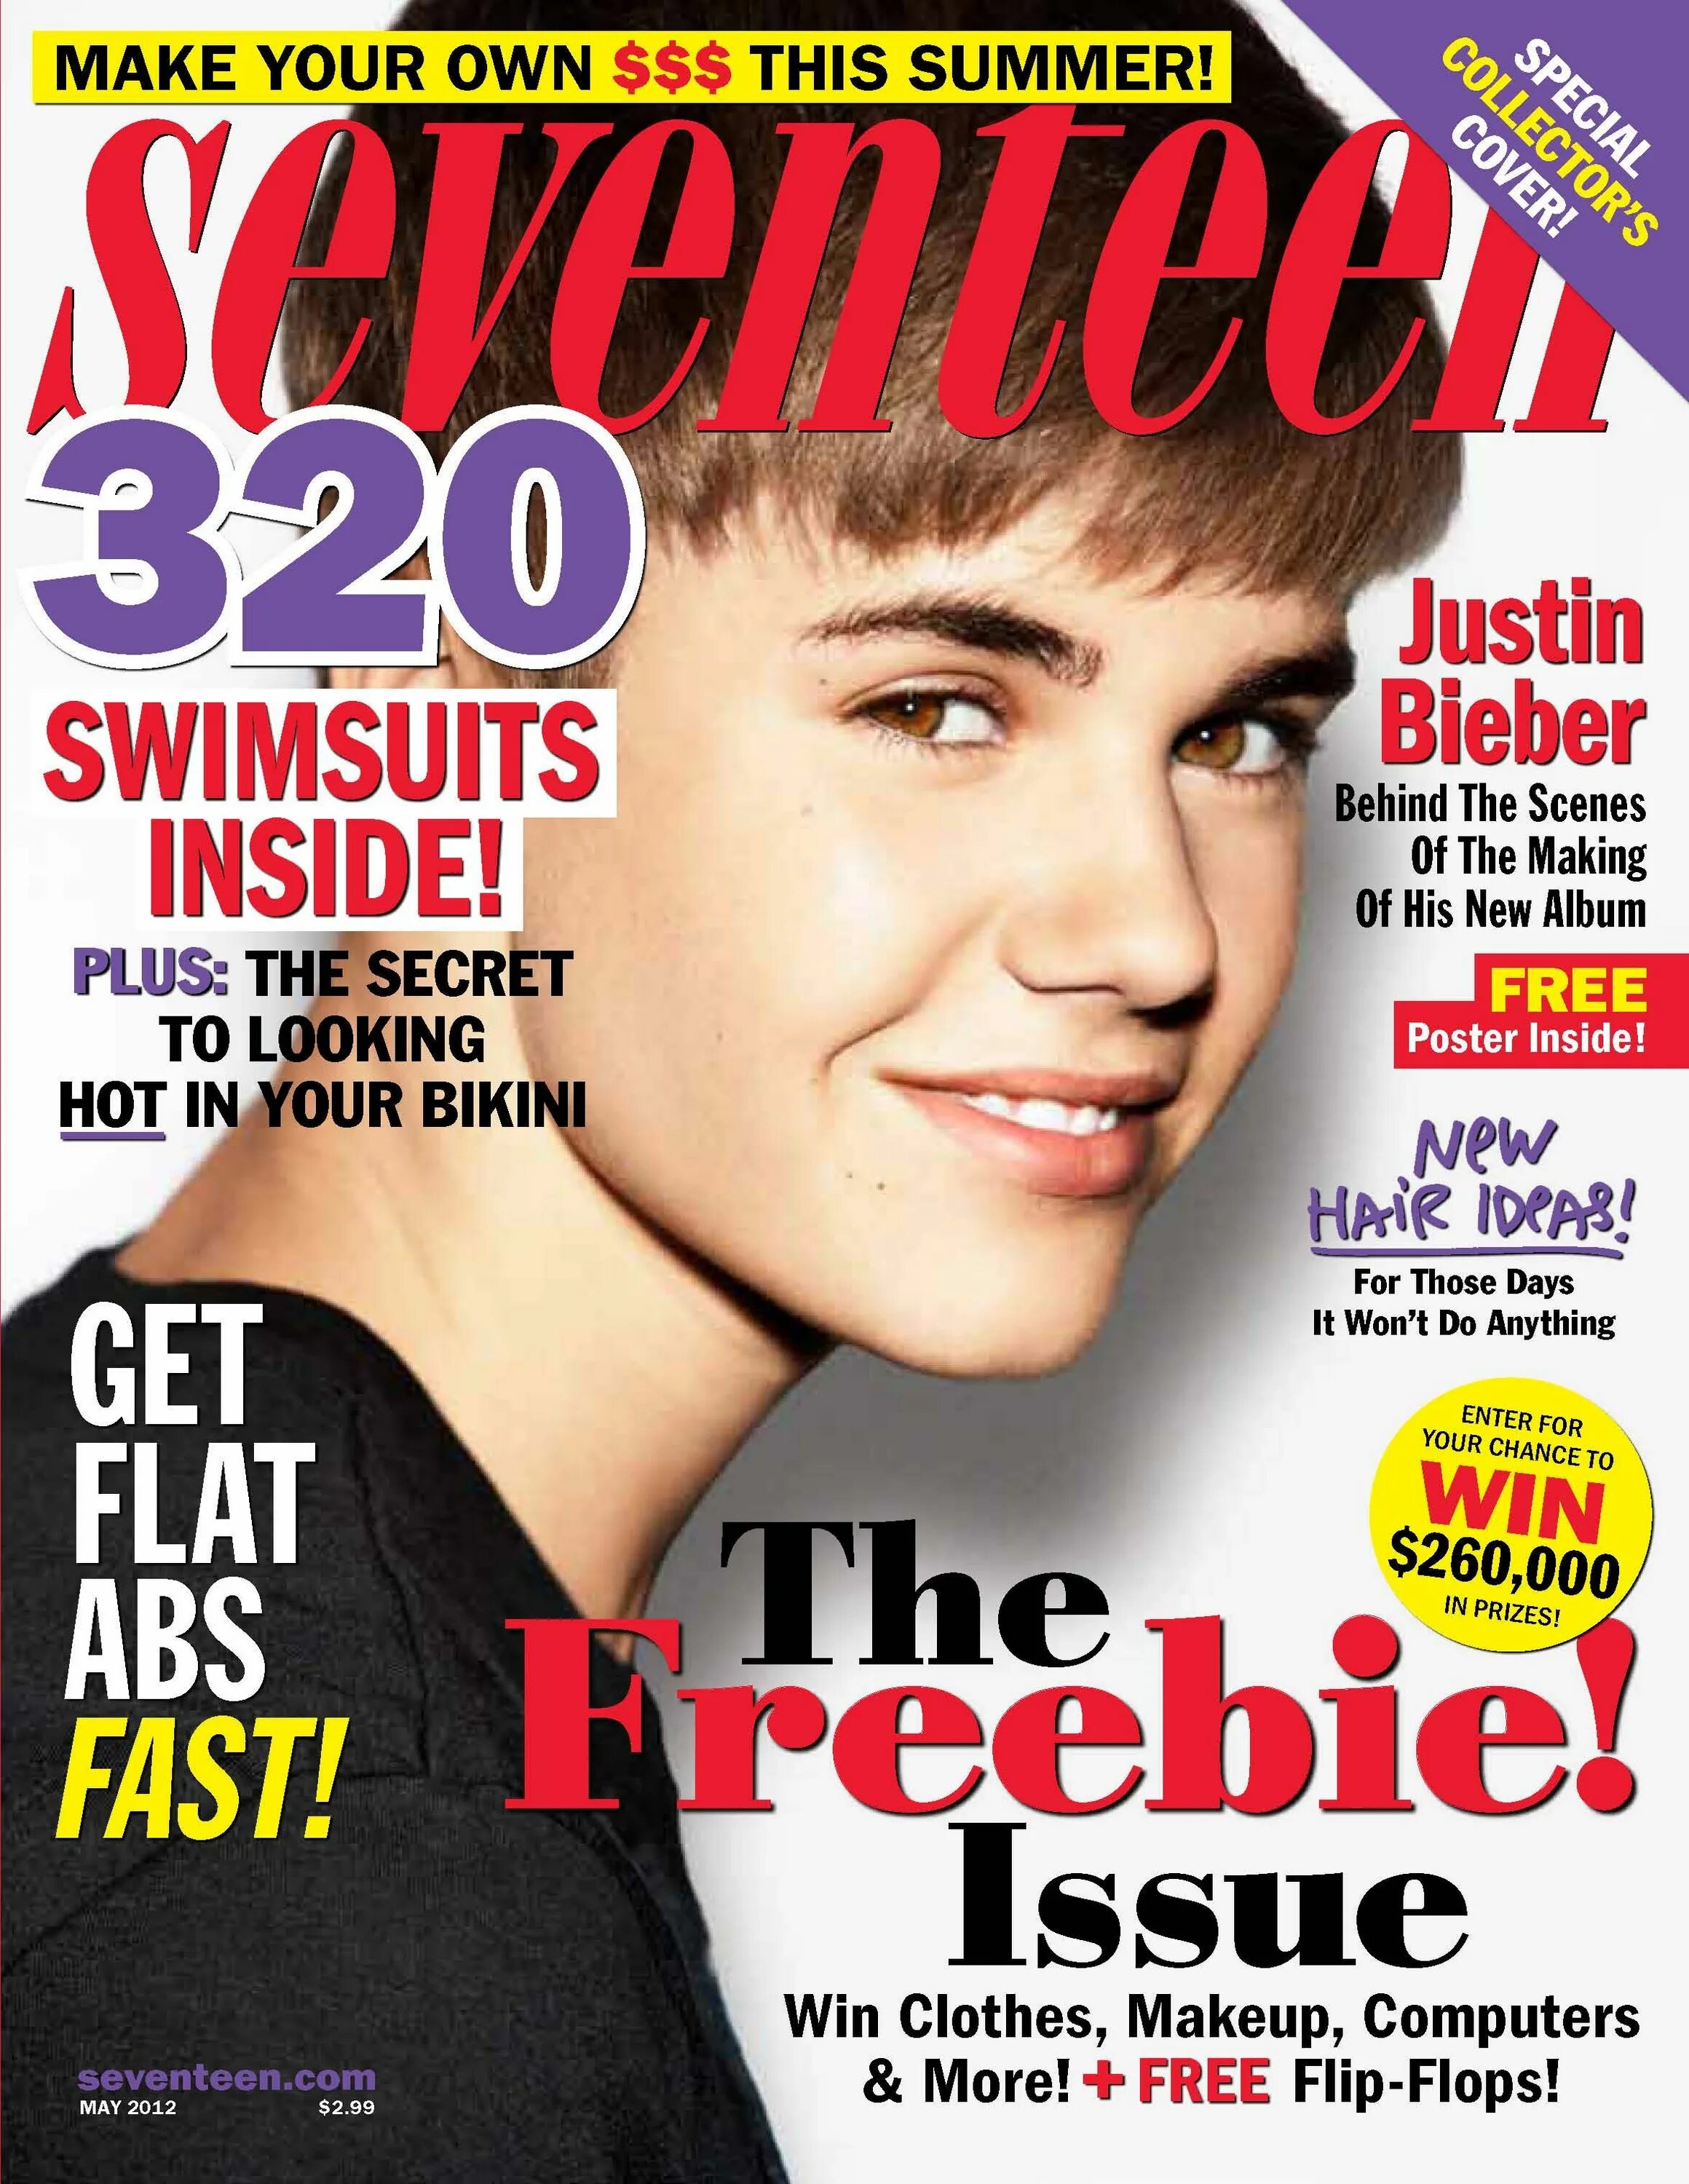 Justin Bieber 2012 обложка. Джастин Бибер журнал. Обложка для журнала. Обложки популярных журналов. Название английских журналов